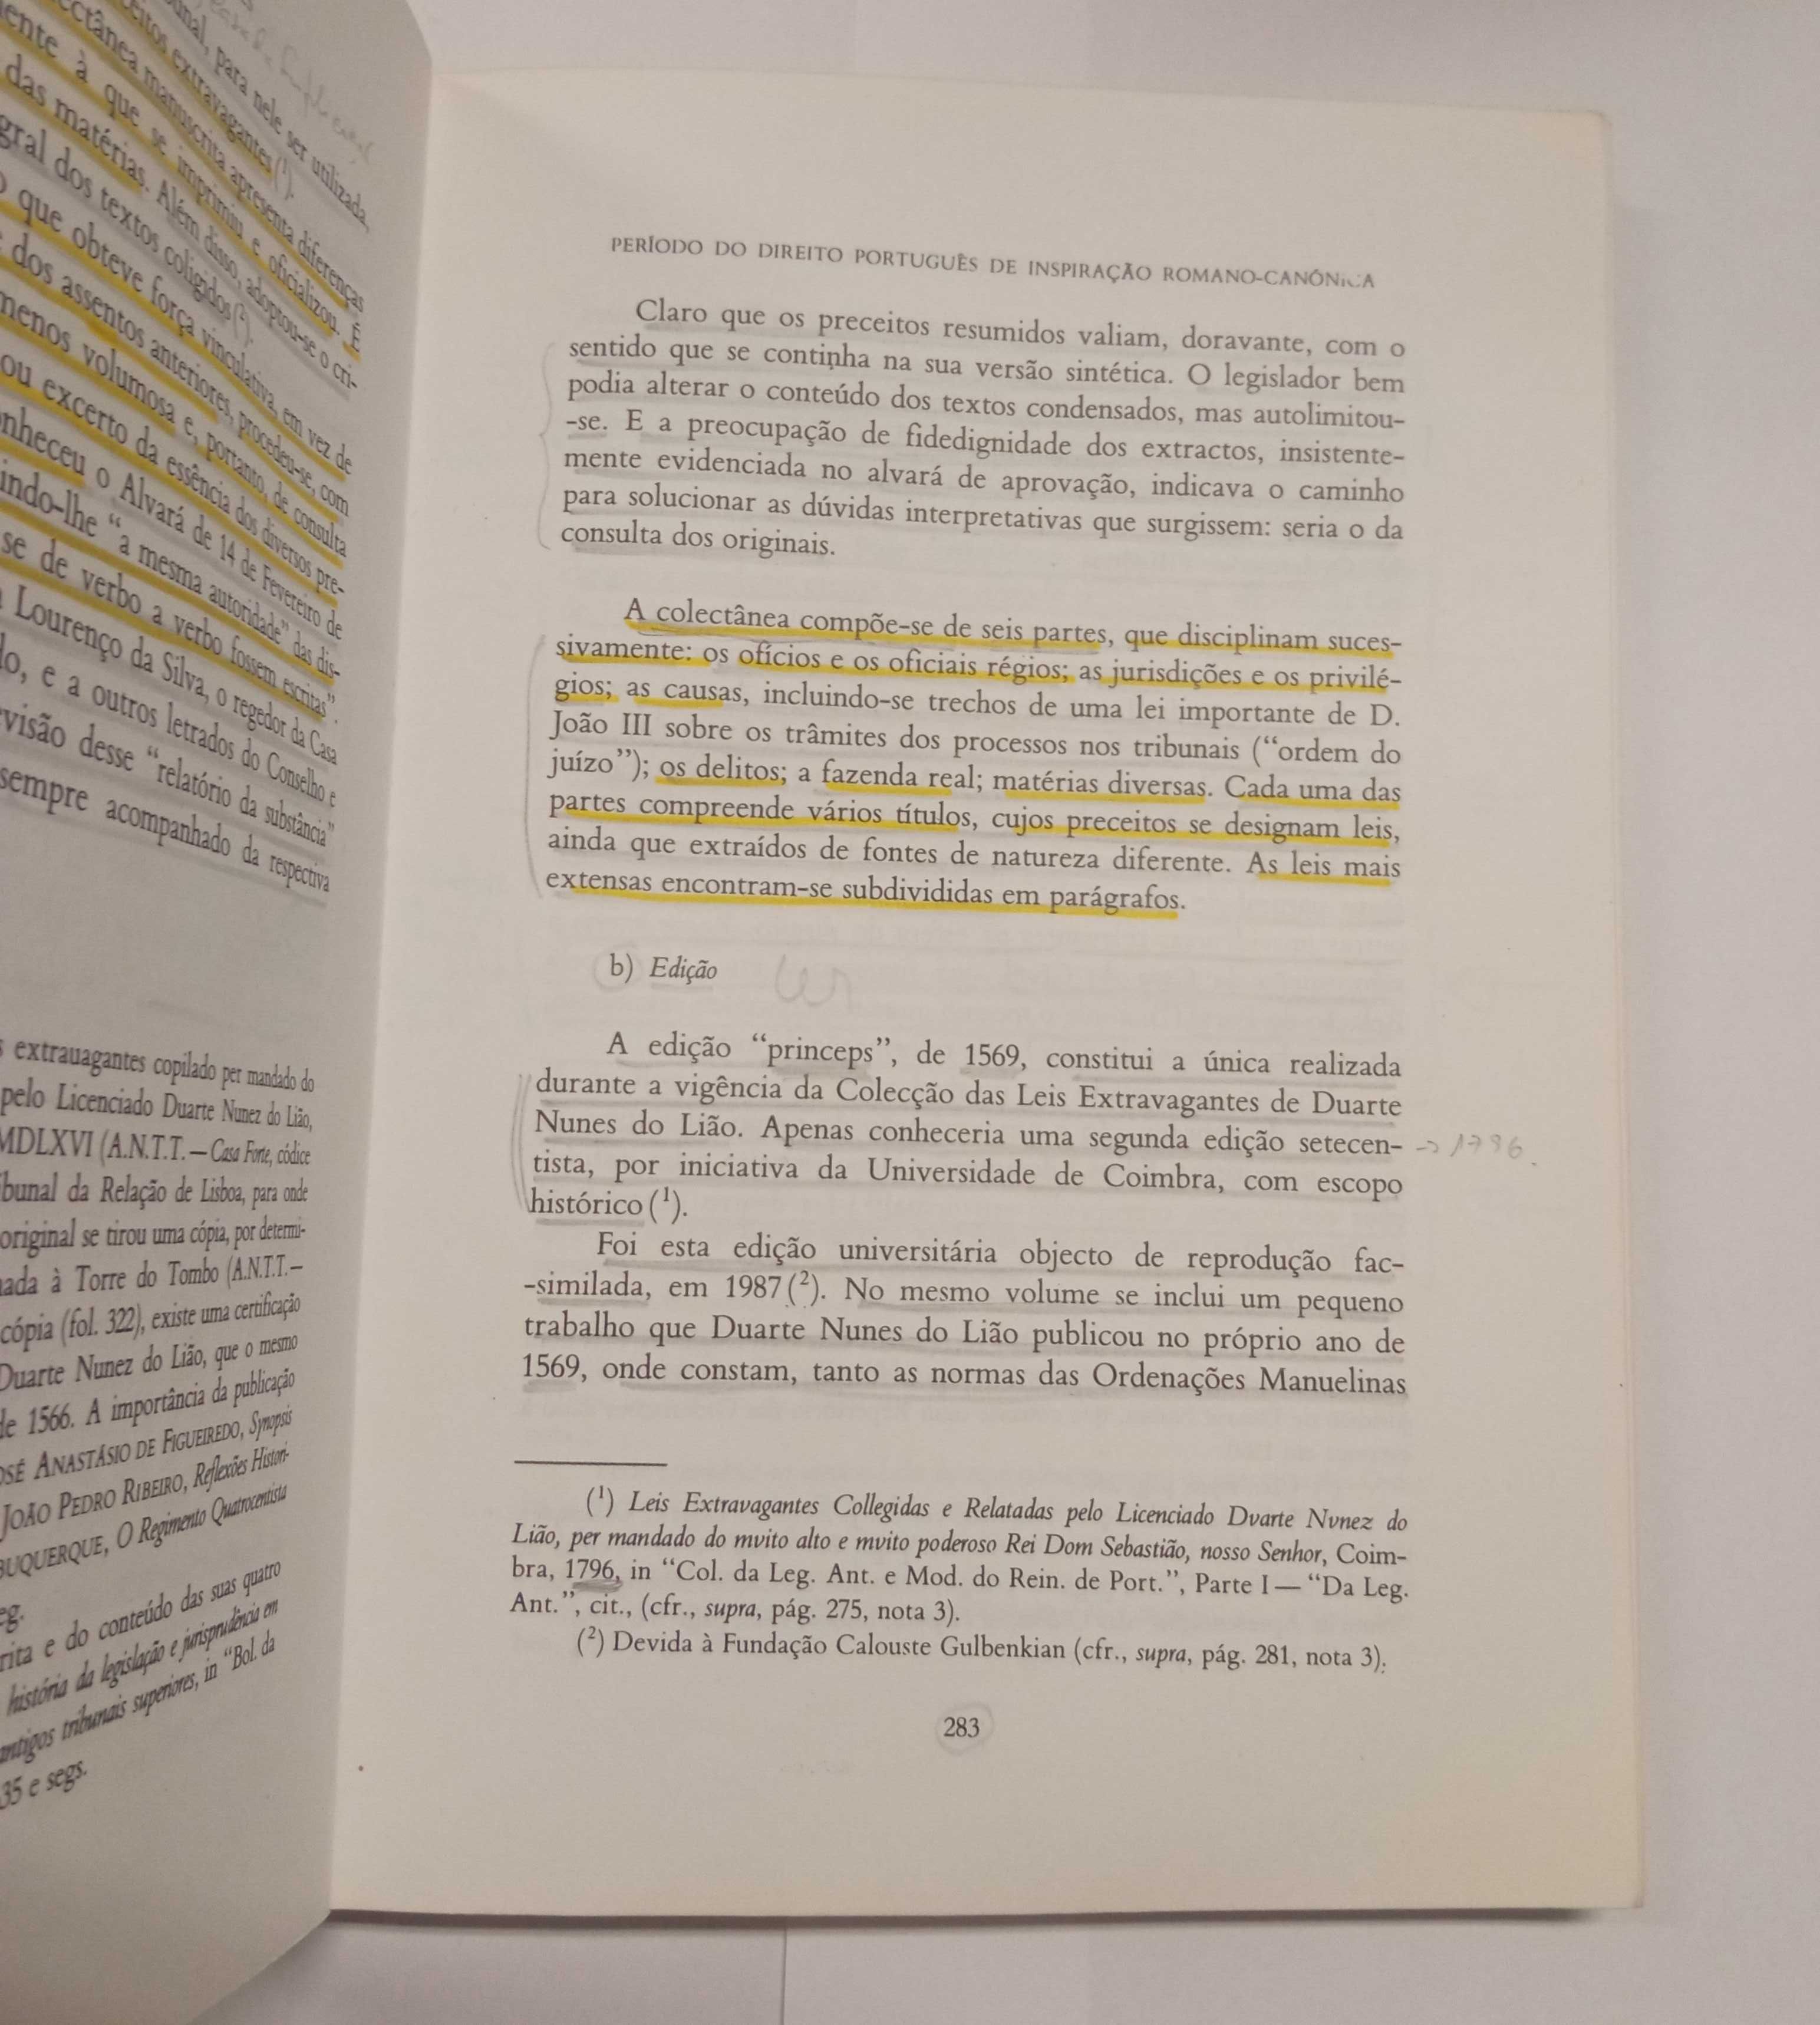 História do Direito Português, de Mário Júlio de Almeida Costa